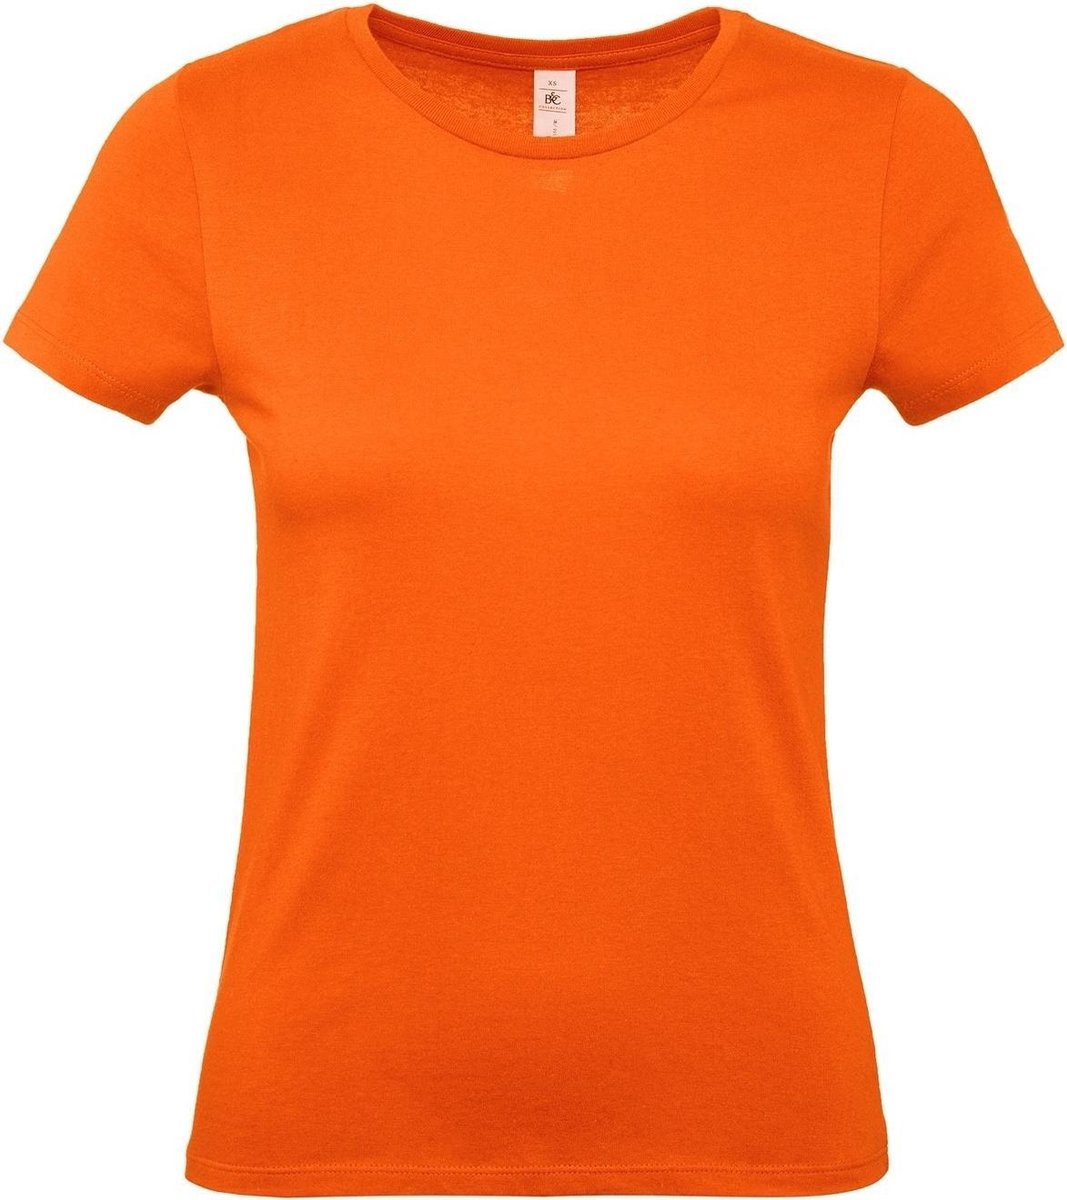 Set van 4x stuks oranje t-shirts met ronde hals voor dames - 100% katoen - Koningsdag / Nederland supporter, maat: L (40)